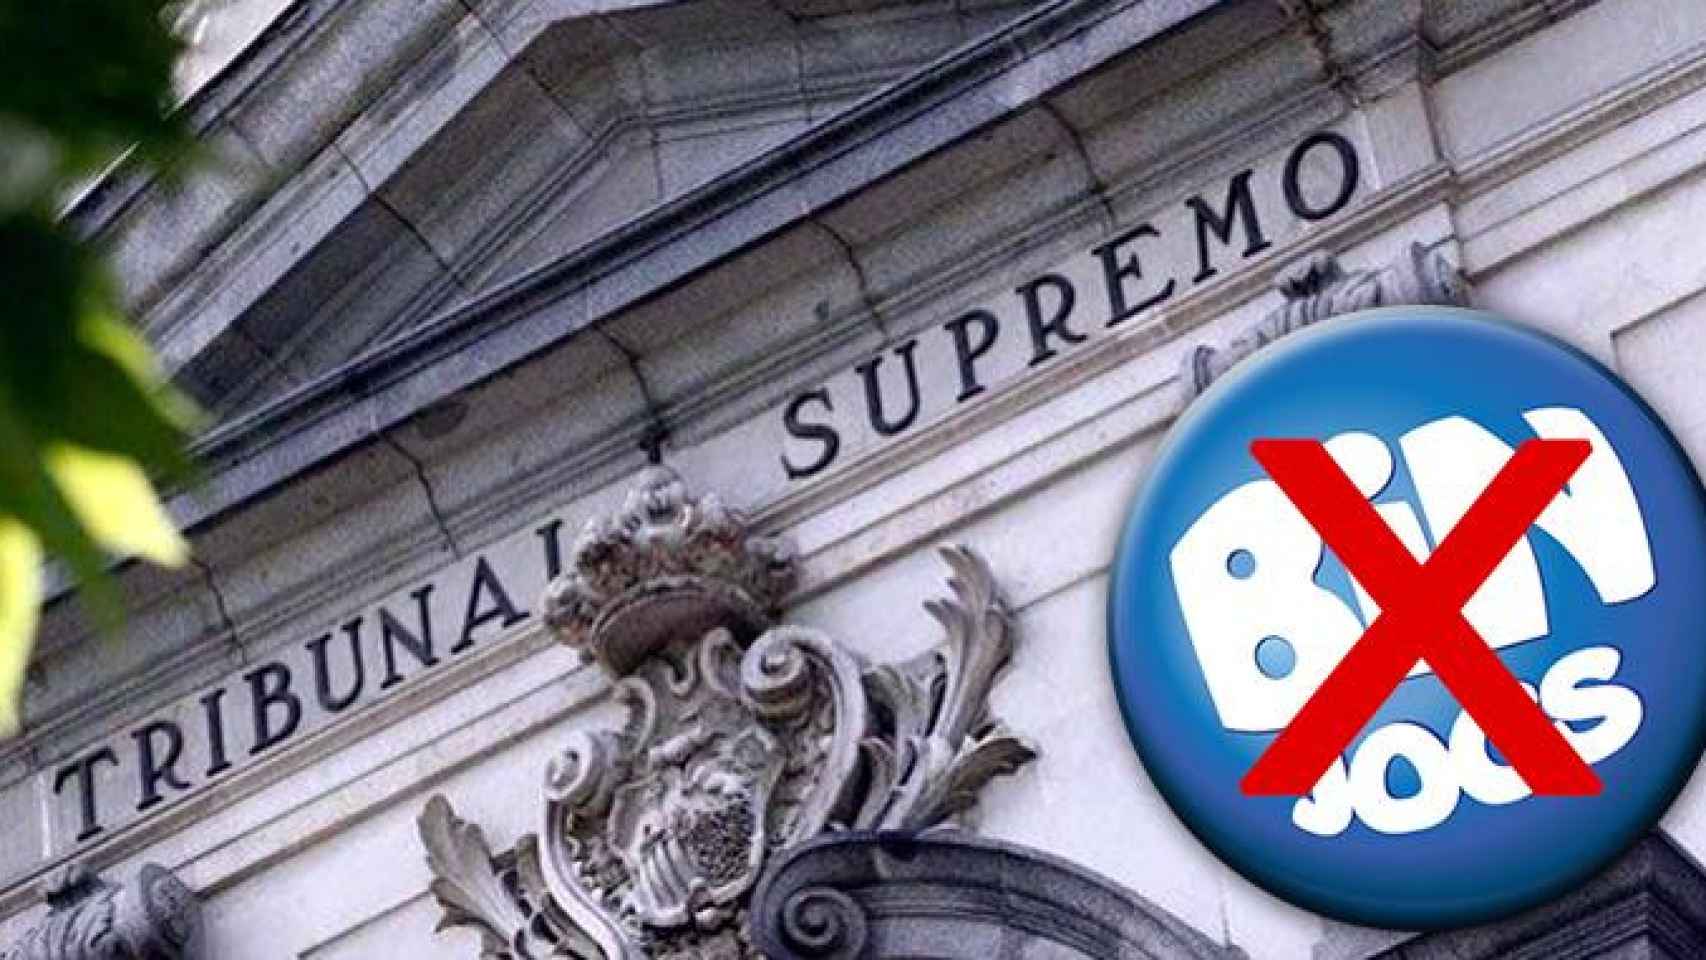 El Tribunal Supremo y el logo de Binjocs / FOTOMONTAJE DE CG